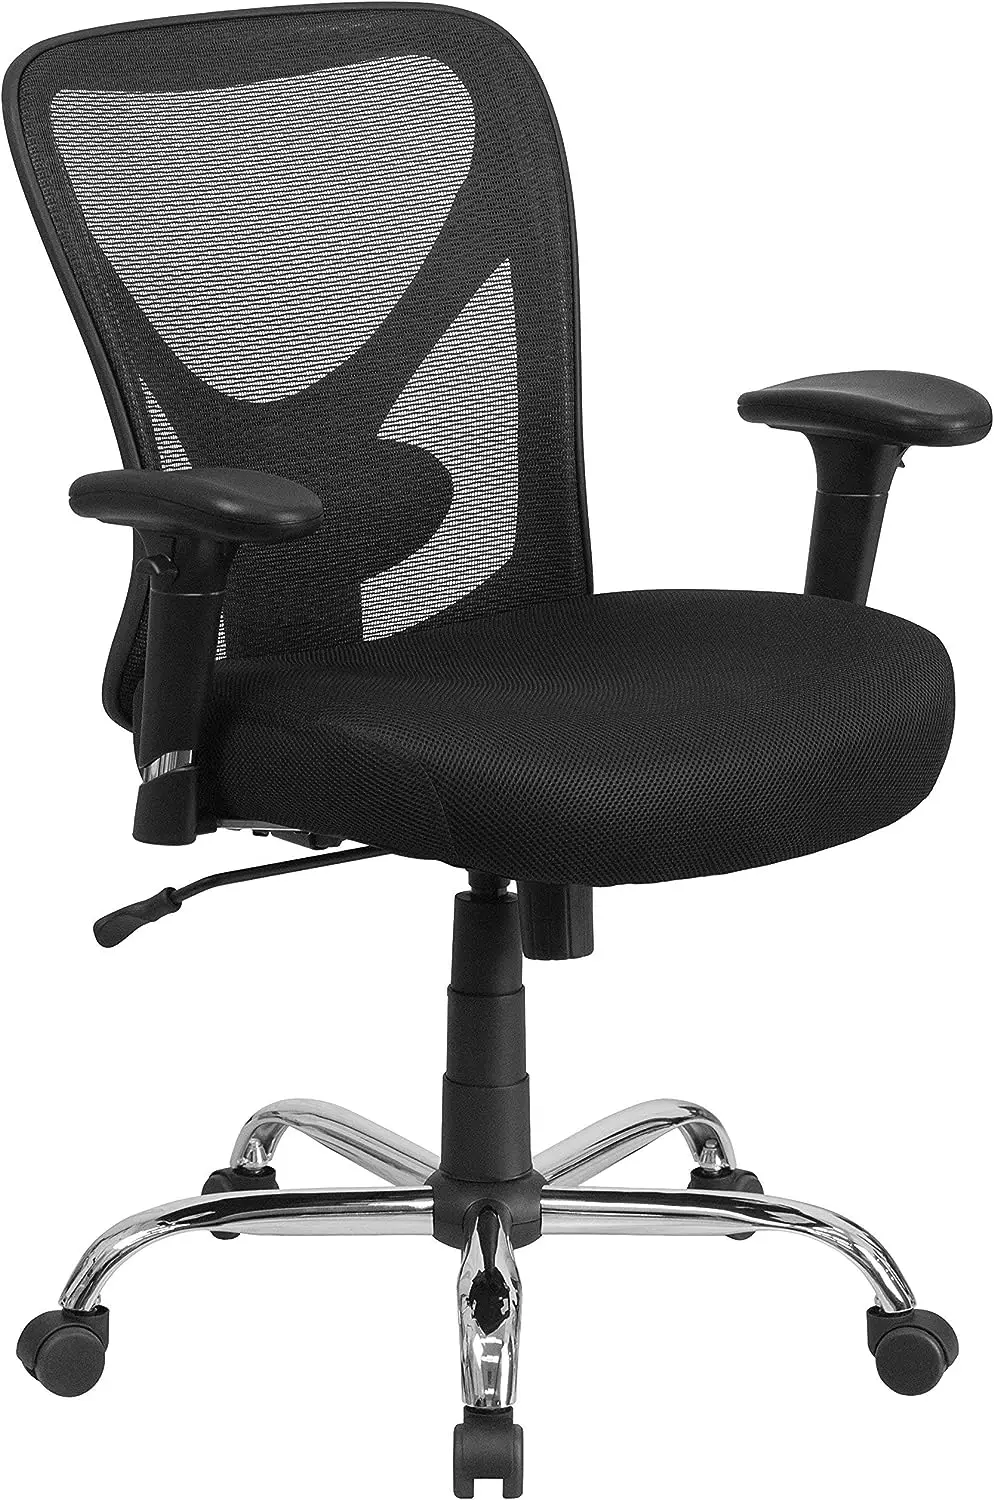 & גבוה הכיסא במשרד | גובה מתכוונן רשת סיבוב כיסא משרדי עם גלגלים - 0